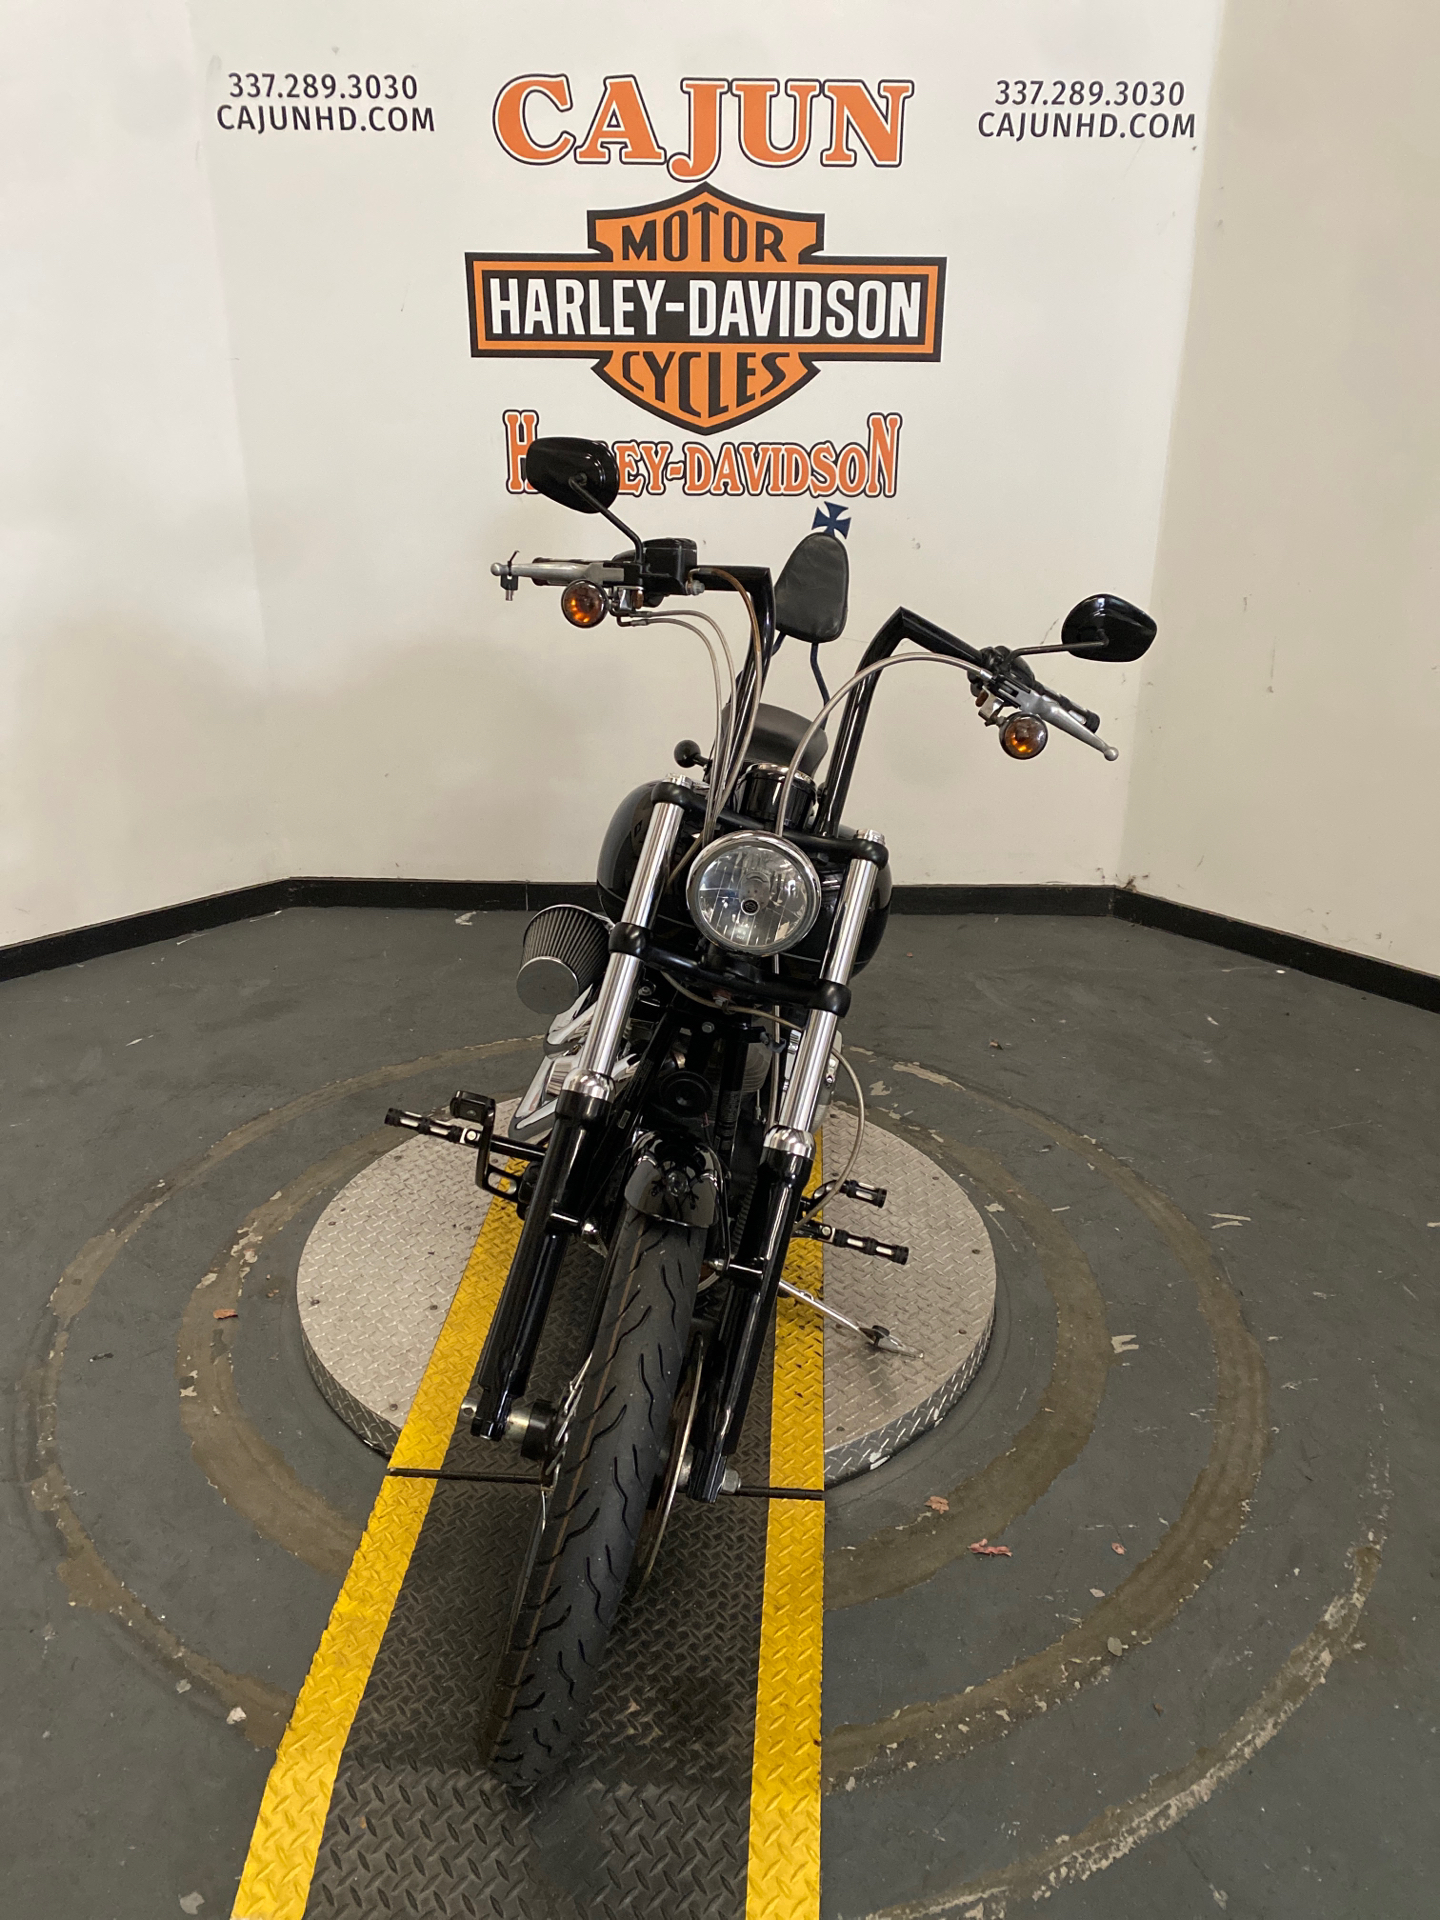 2012 Harley-Davidson Softail Blackline near me - Photo 5